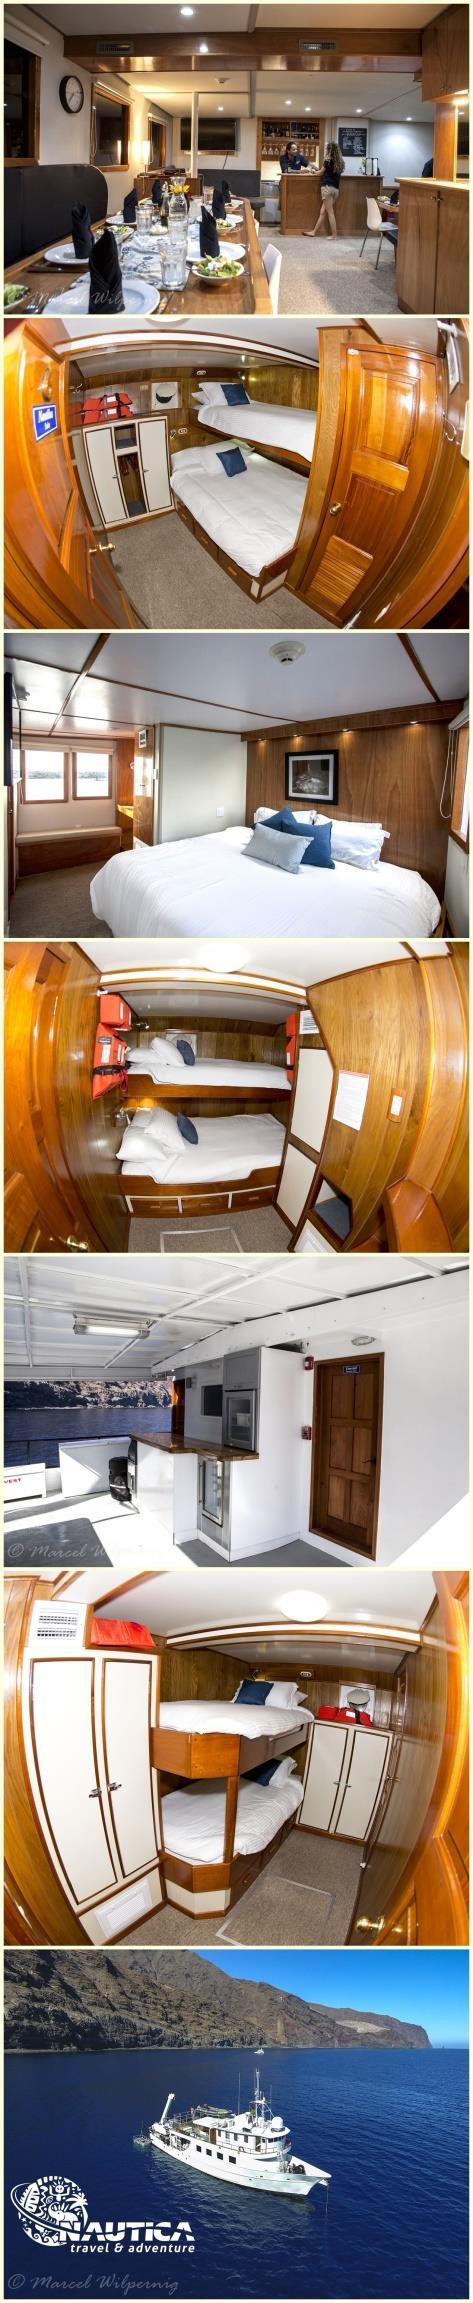 Nautilus Undersea (poprzednio słynny Undersea Hunter z Wyspy Cocos) to łódź, która posiada olbrzymią renomę i jest jedną z bardziej lubianych łodzi nurkowych na świecie.